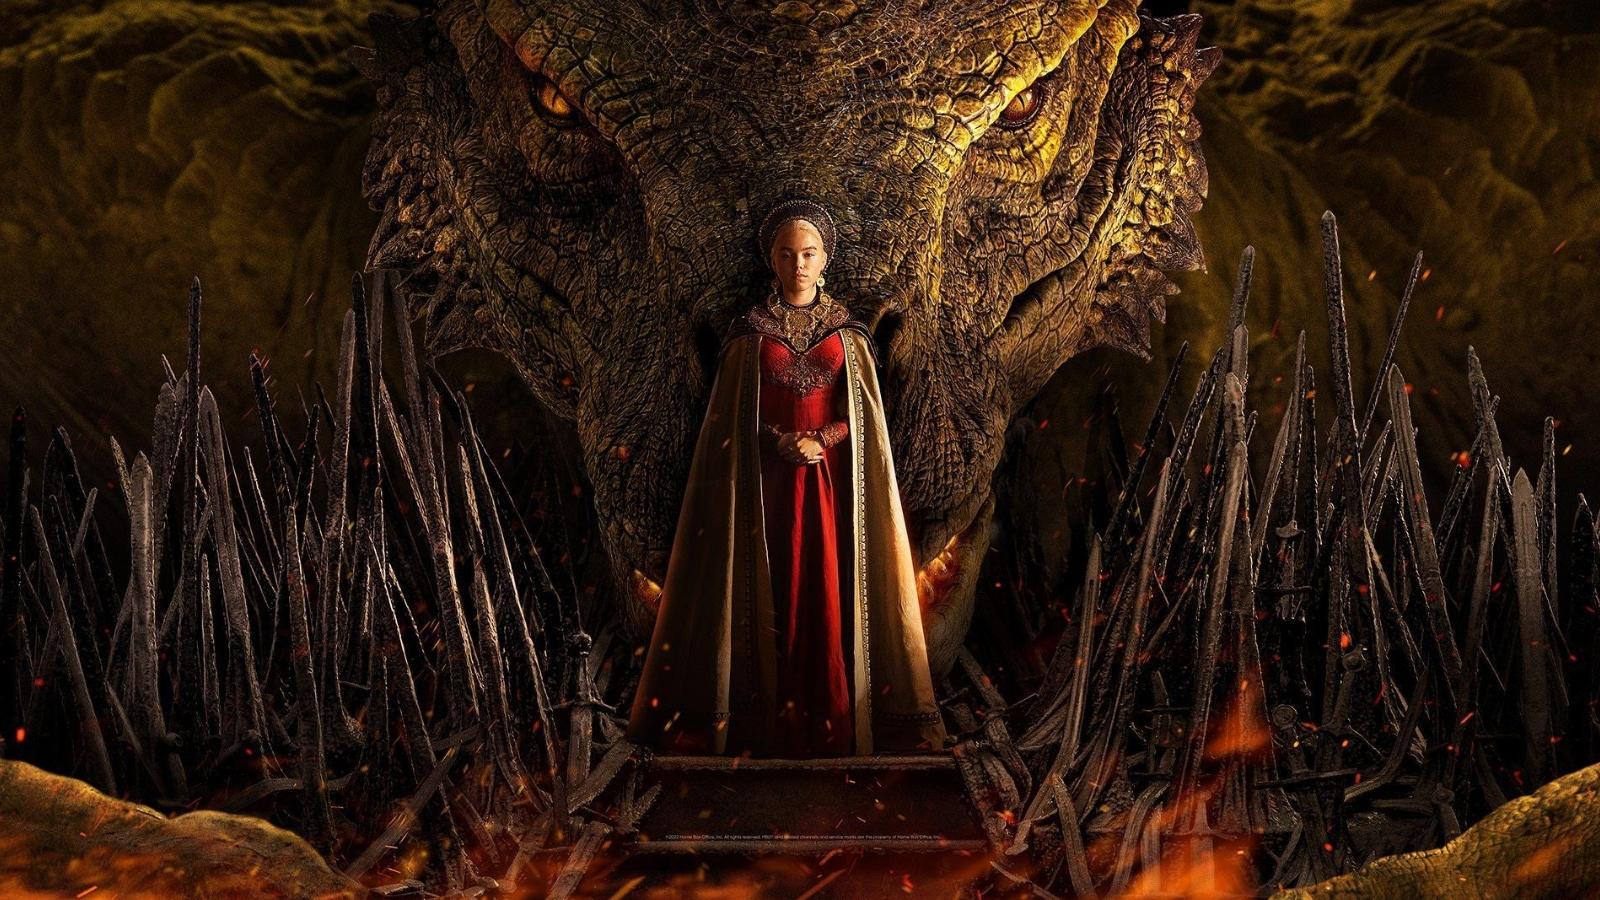 rhaenyra et son dragon dans la saison de house of the dragon